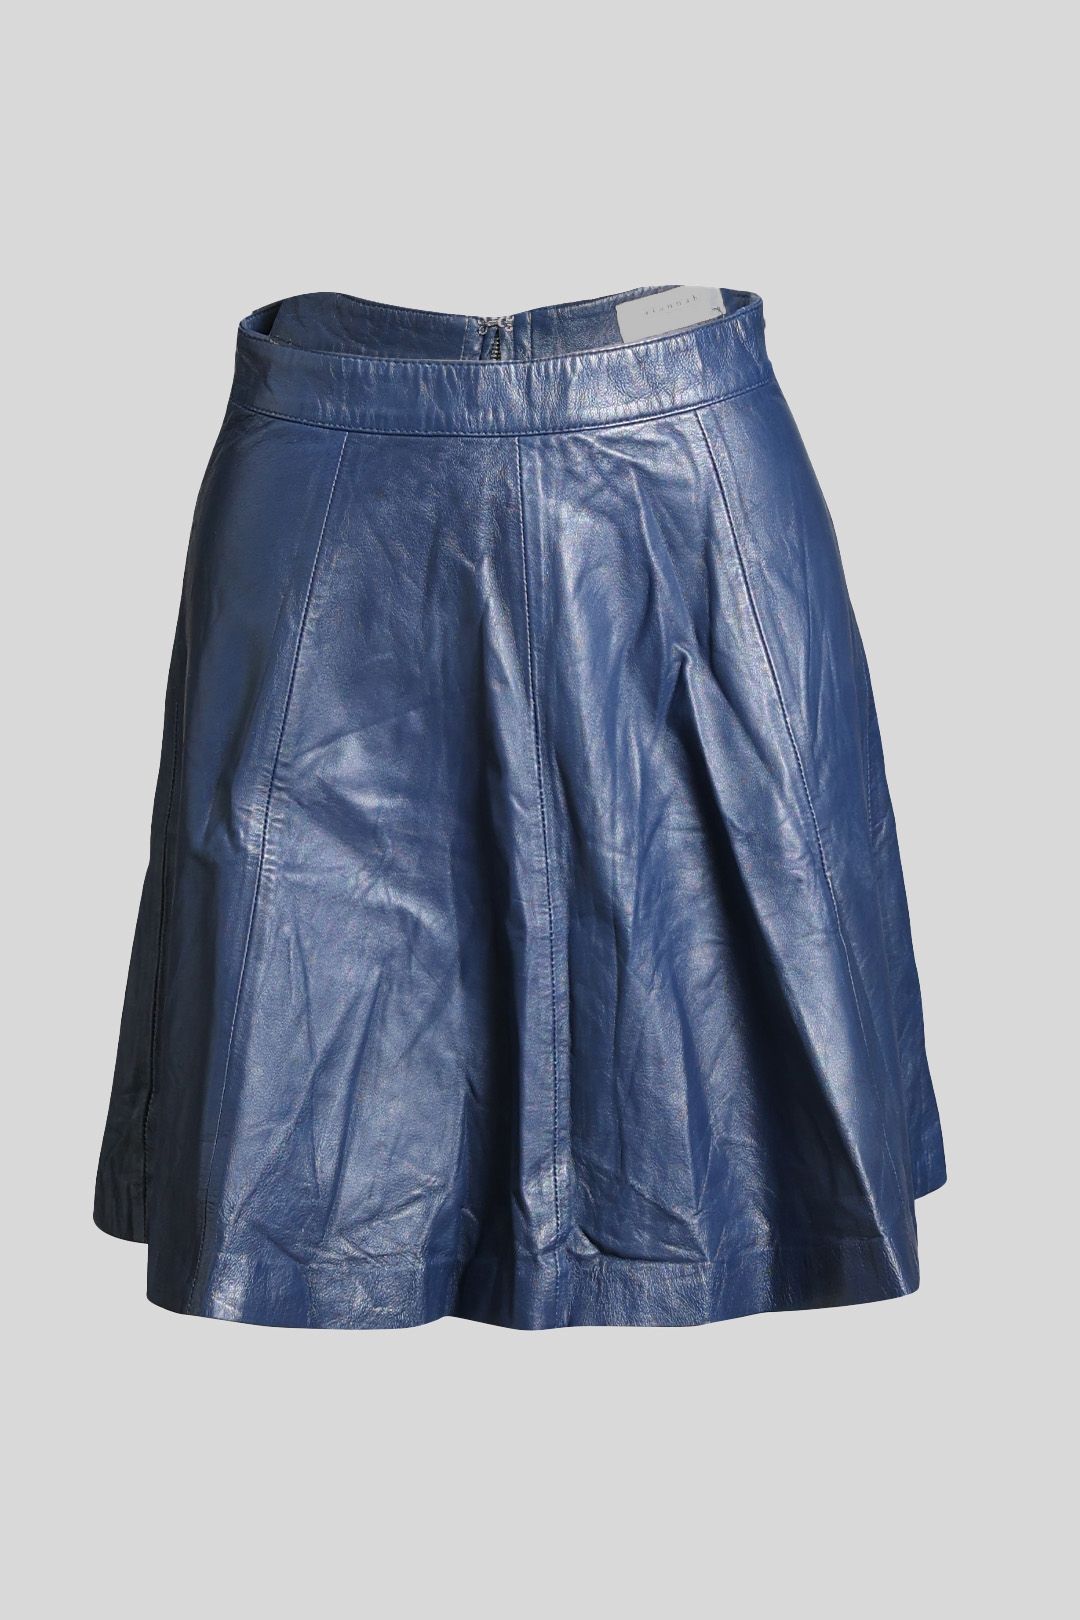 Buy Blue Leather Skater Mini Skirt, Alannah Hill